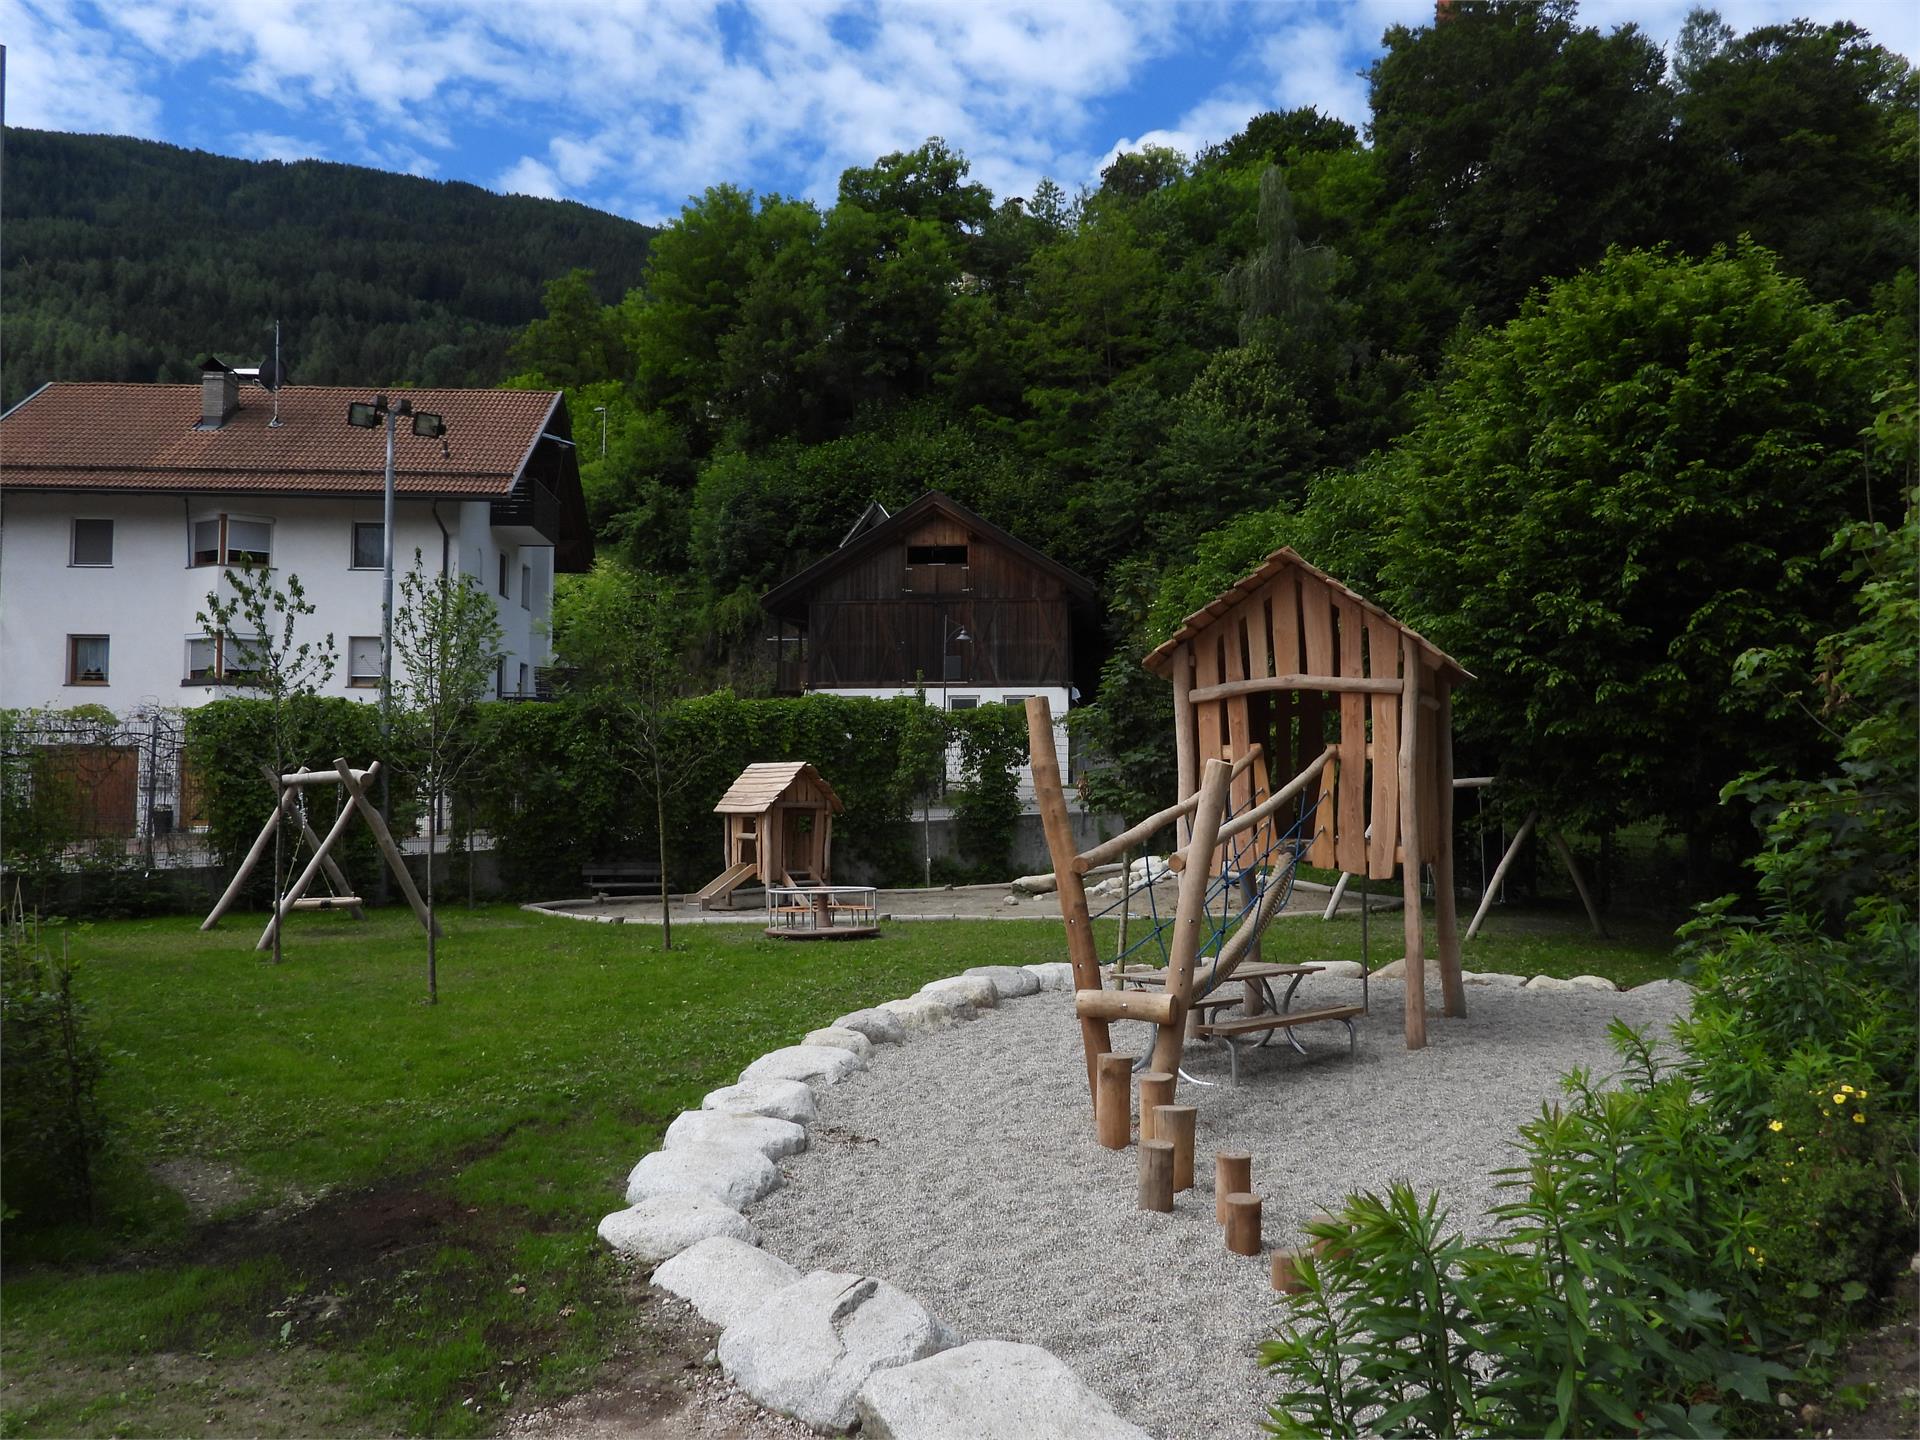 Children's Playground Ehrenburg/Casteldarne